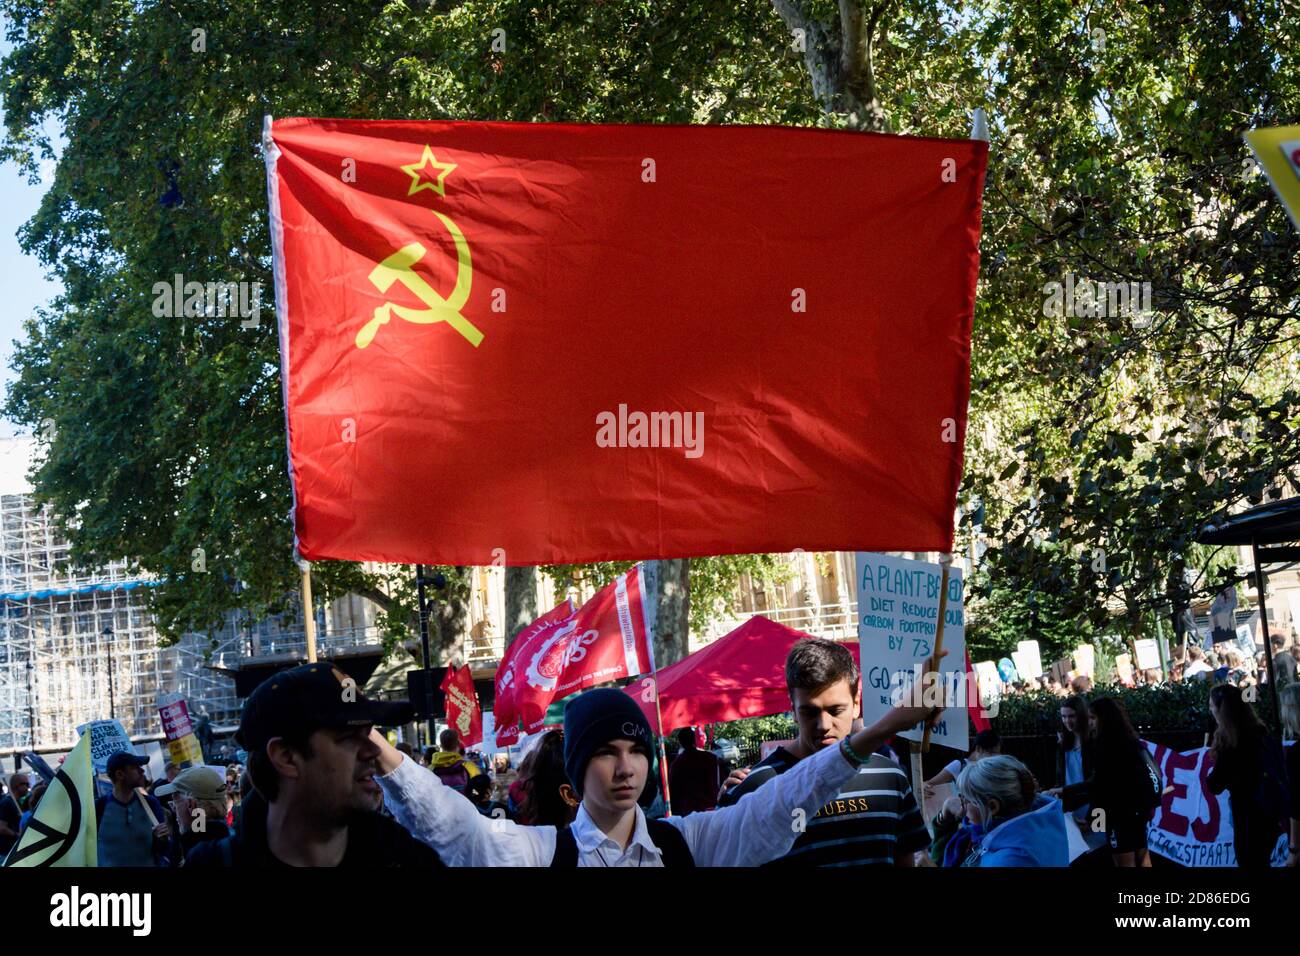 Londres, Royaume-Uni, 20 septembre 2019 :- les manifestants pour le changement climatique se réunissent à Westminster, prennent le drapeau de l'URSS Banque D'Images